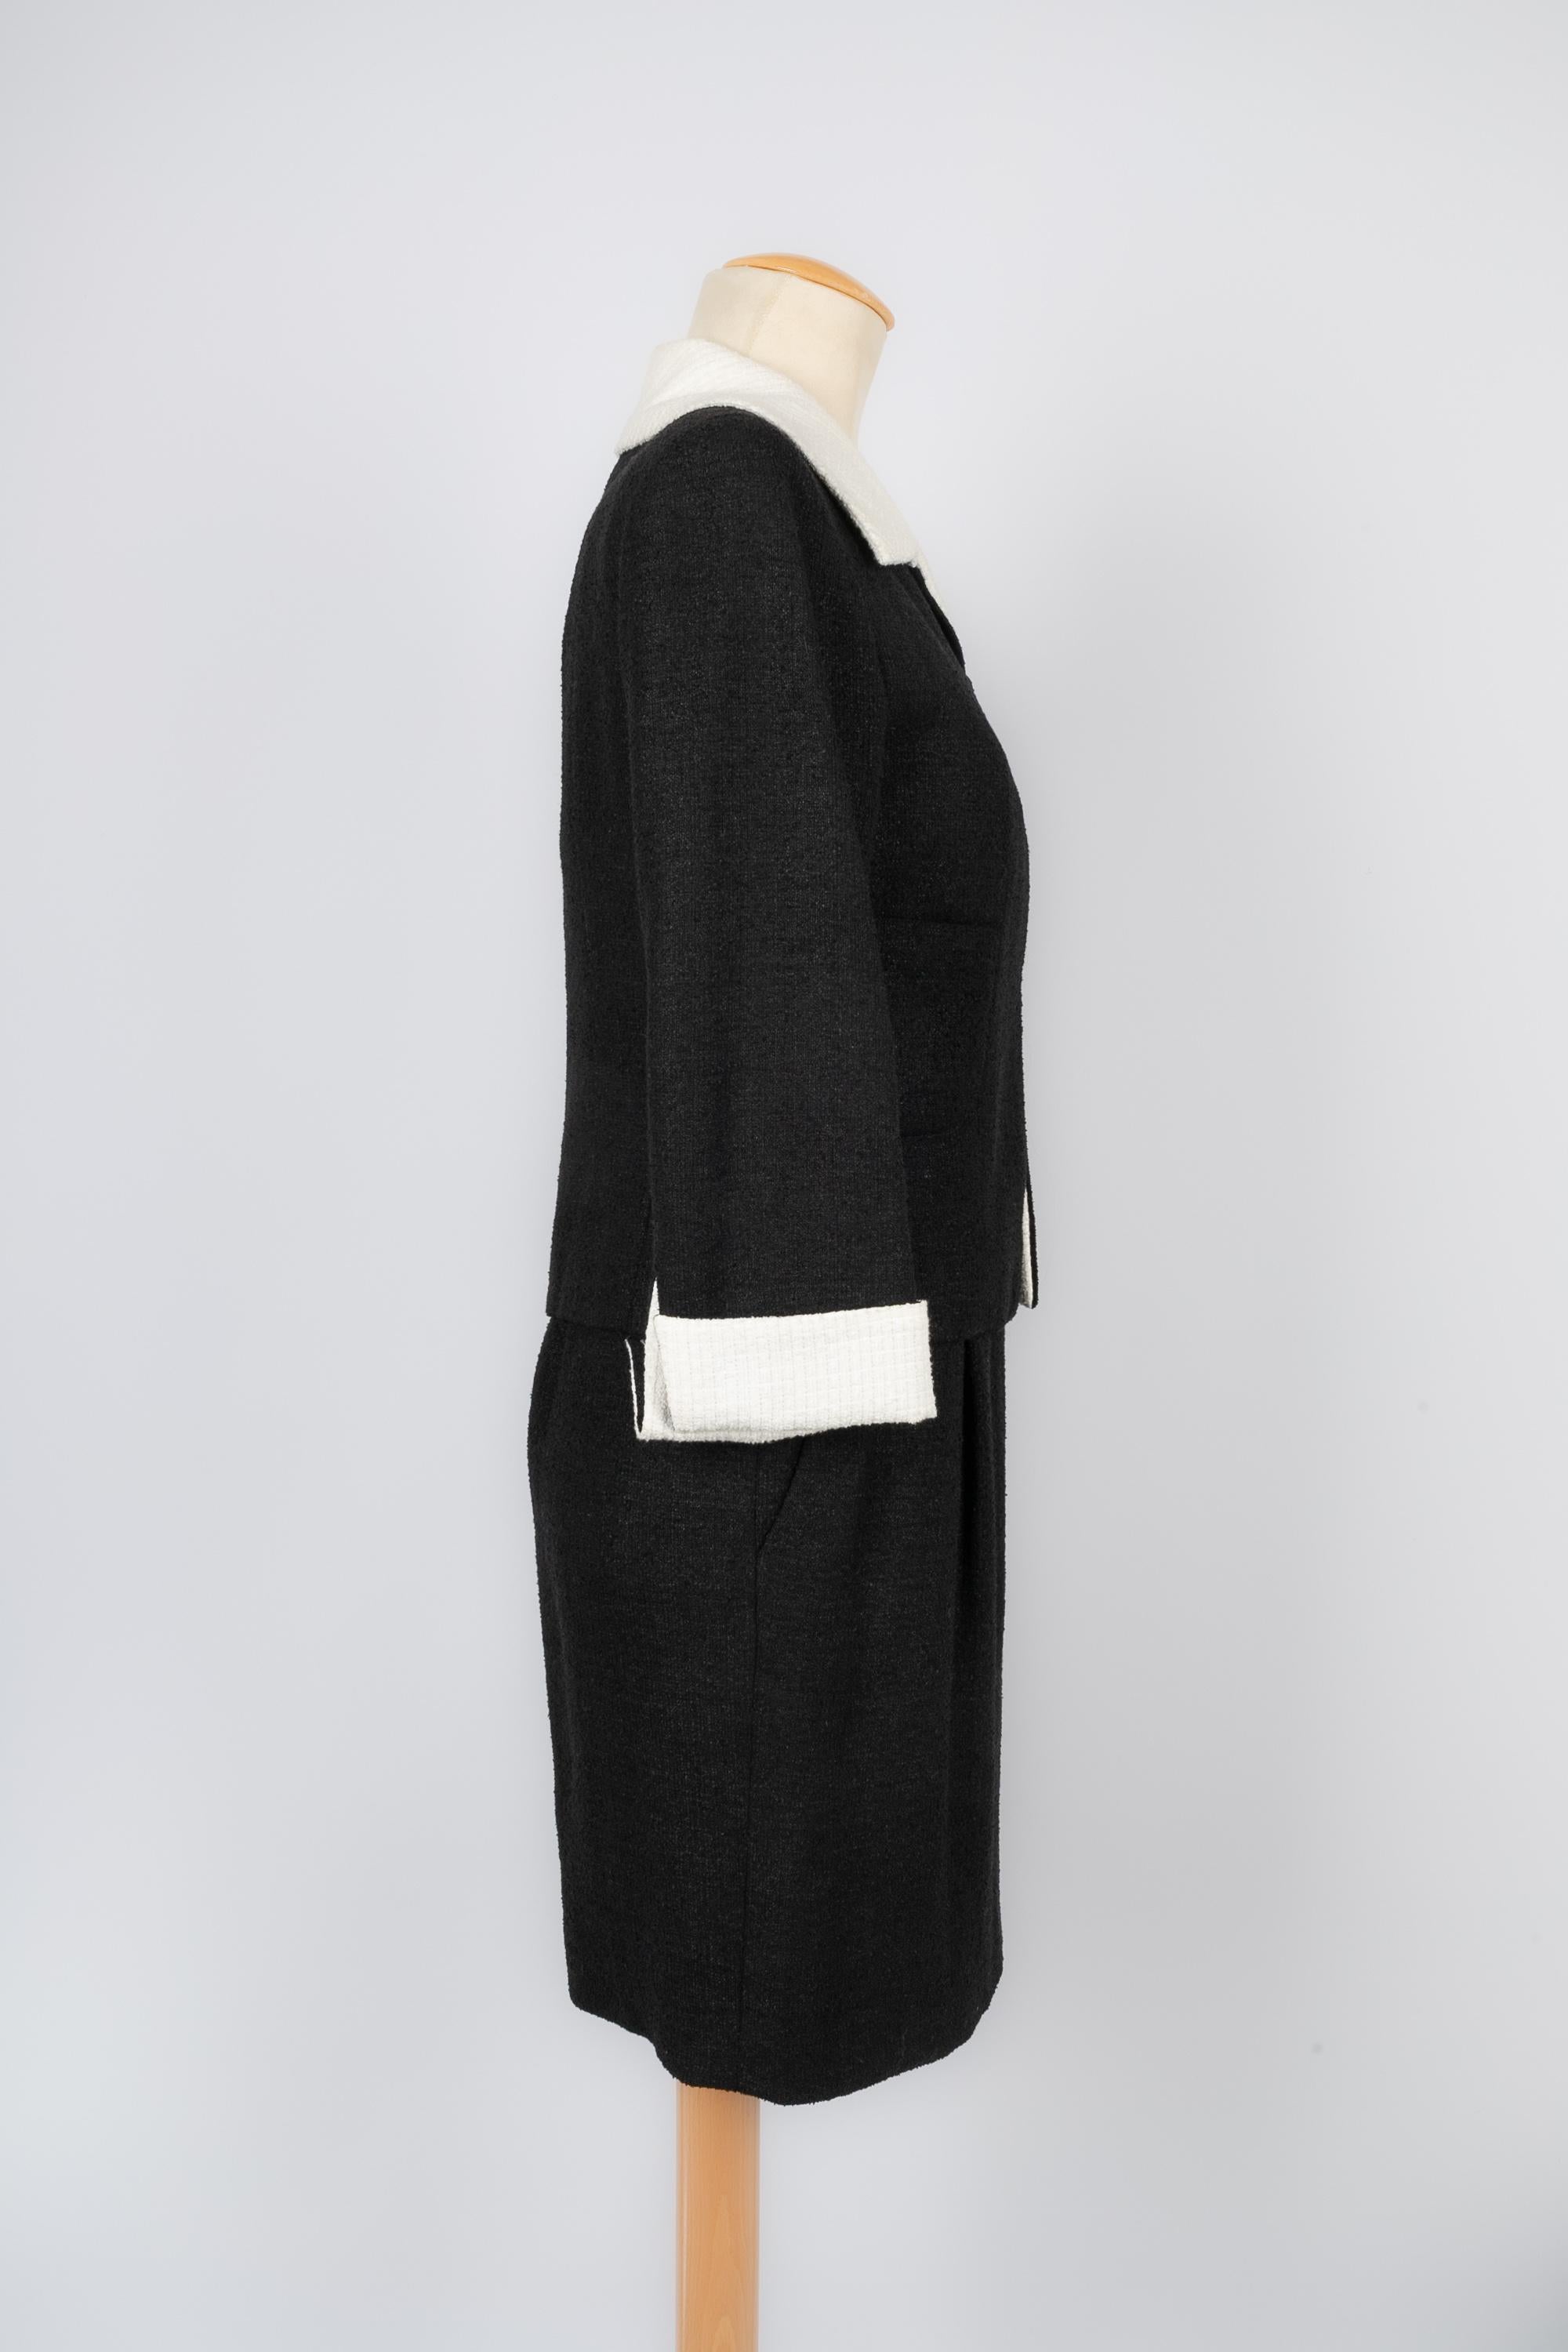 CHANEL - (Fabriqué en France) Ensemble noir et blanc en lin, coton et laine composé d'une veste et d'une robe. Doublure en soie. Taille 36FR. Collectional printemps-été 2009.

Condit :
Très bon état.

Dimensions :
Veste : Largeur des épaules : 38 cm